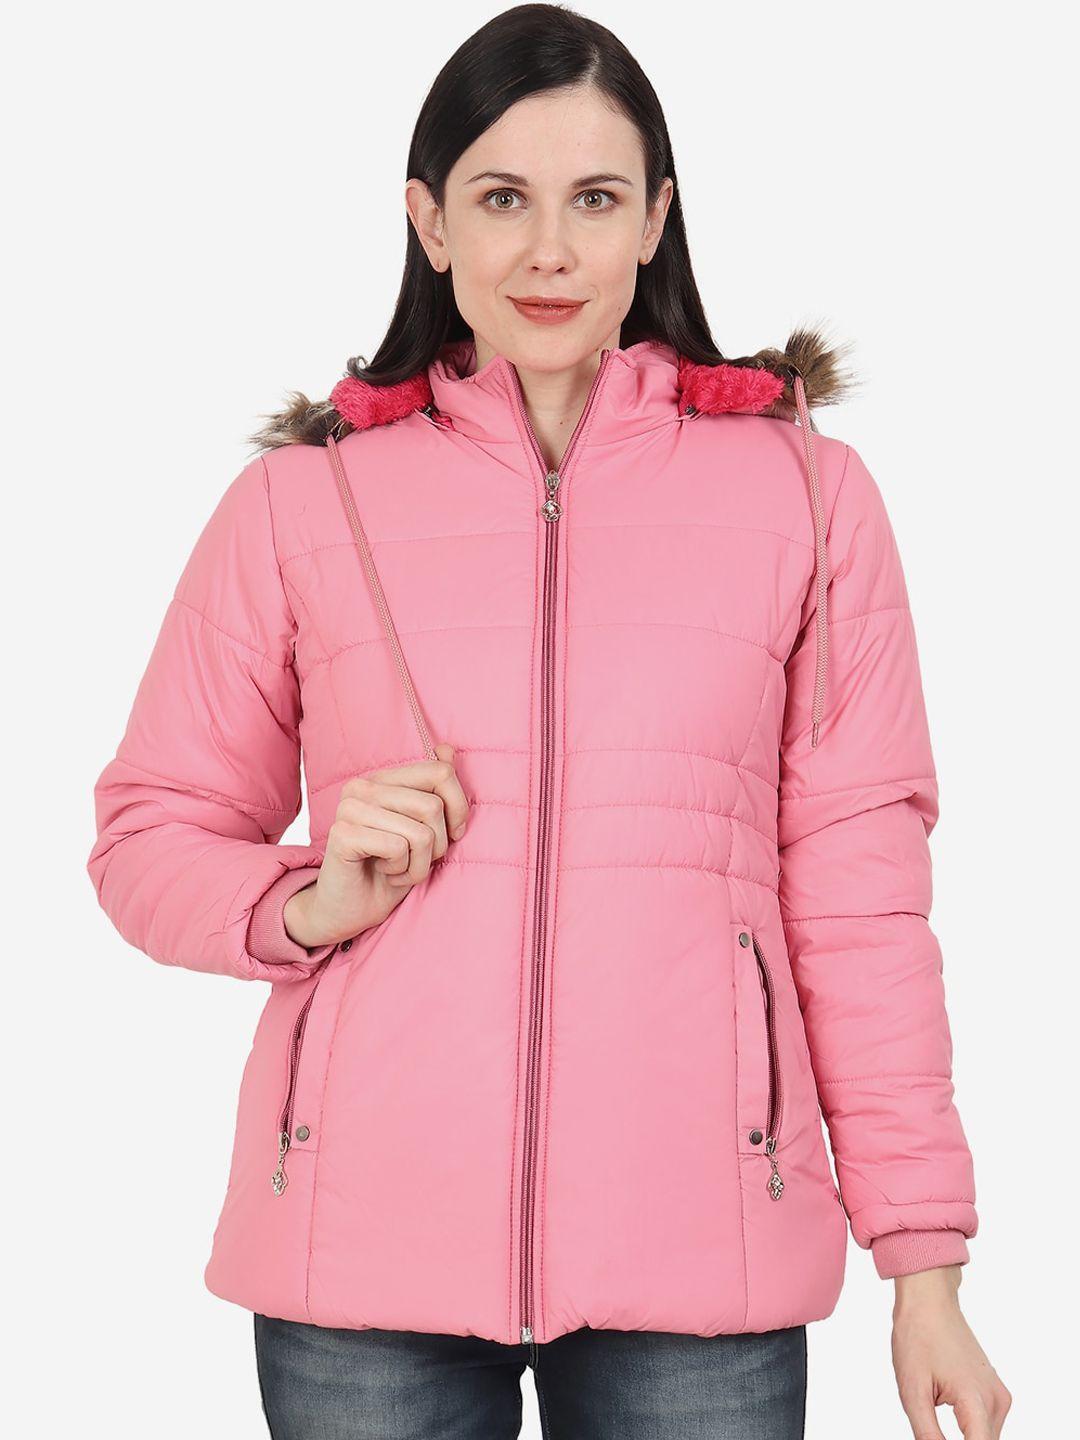 xohy women pink lightweight outdoor parka jacket